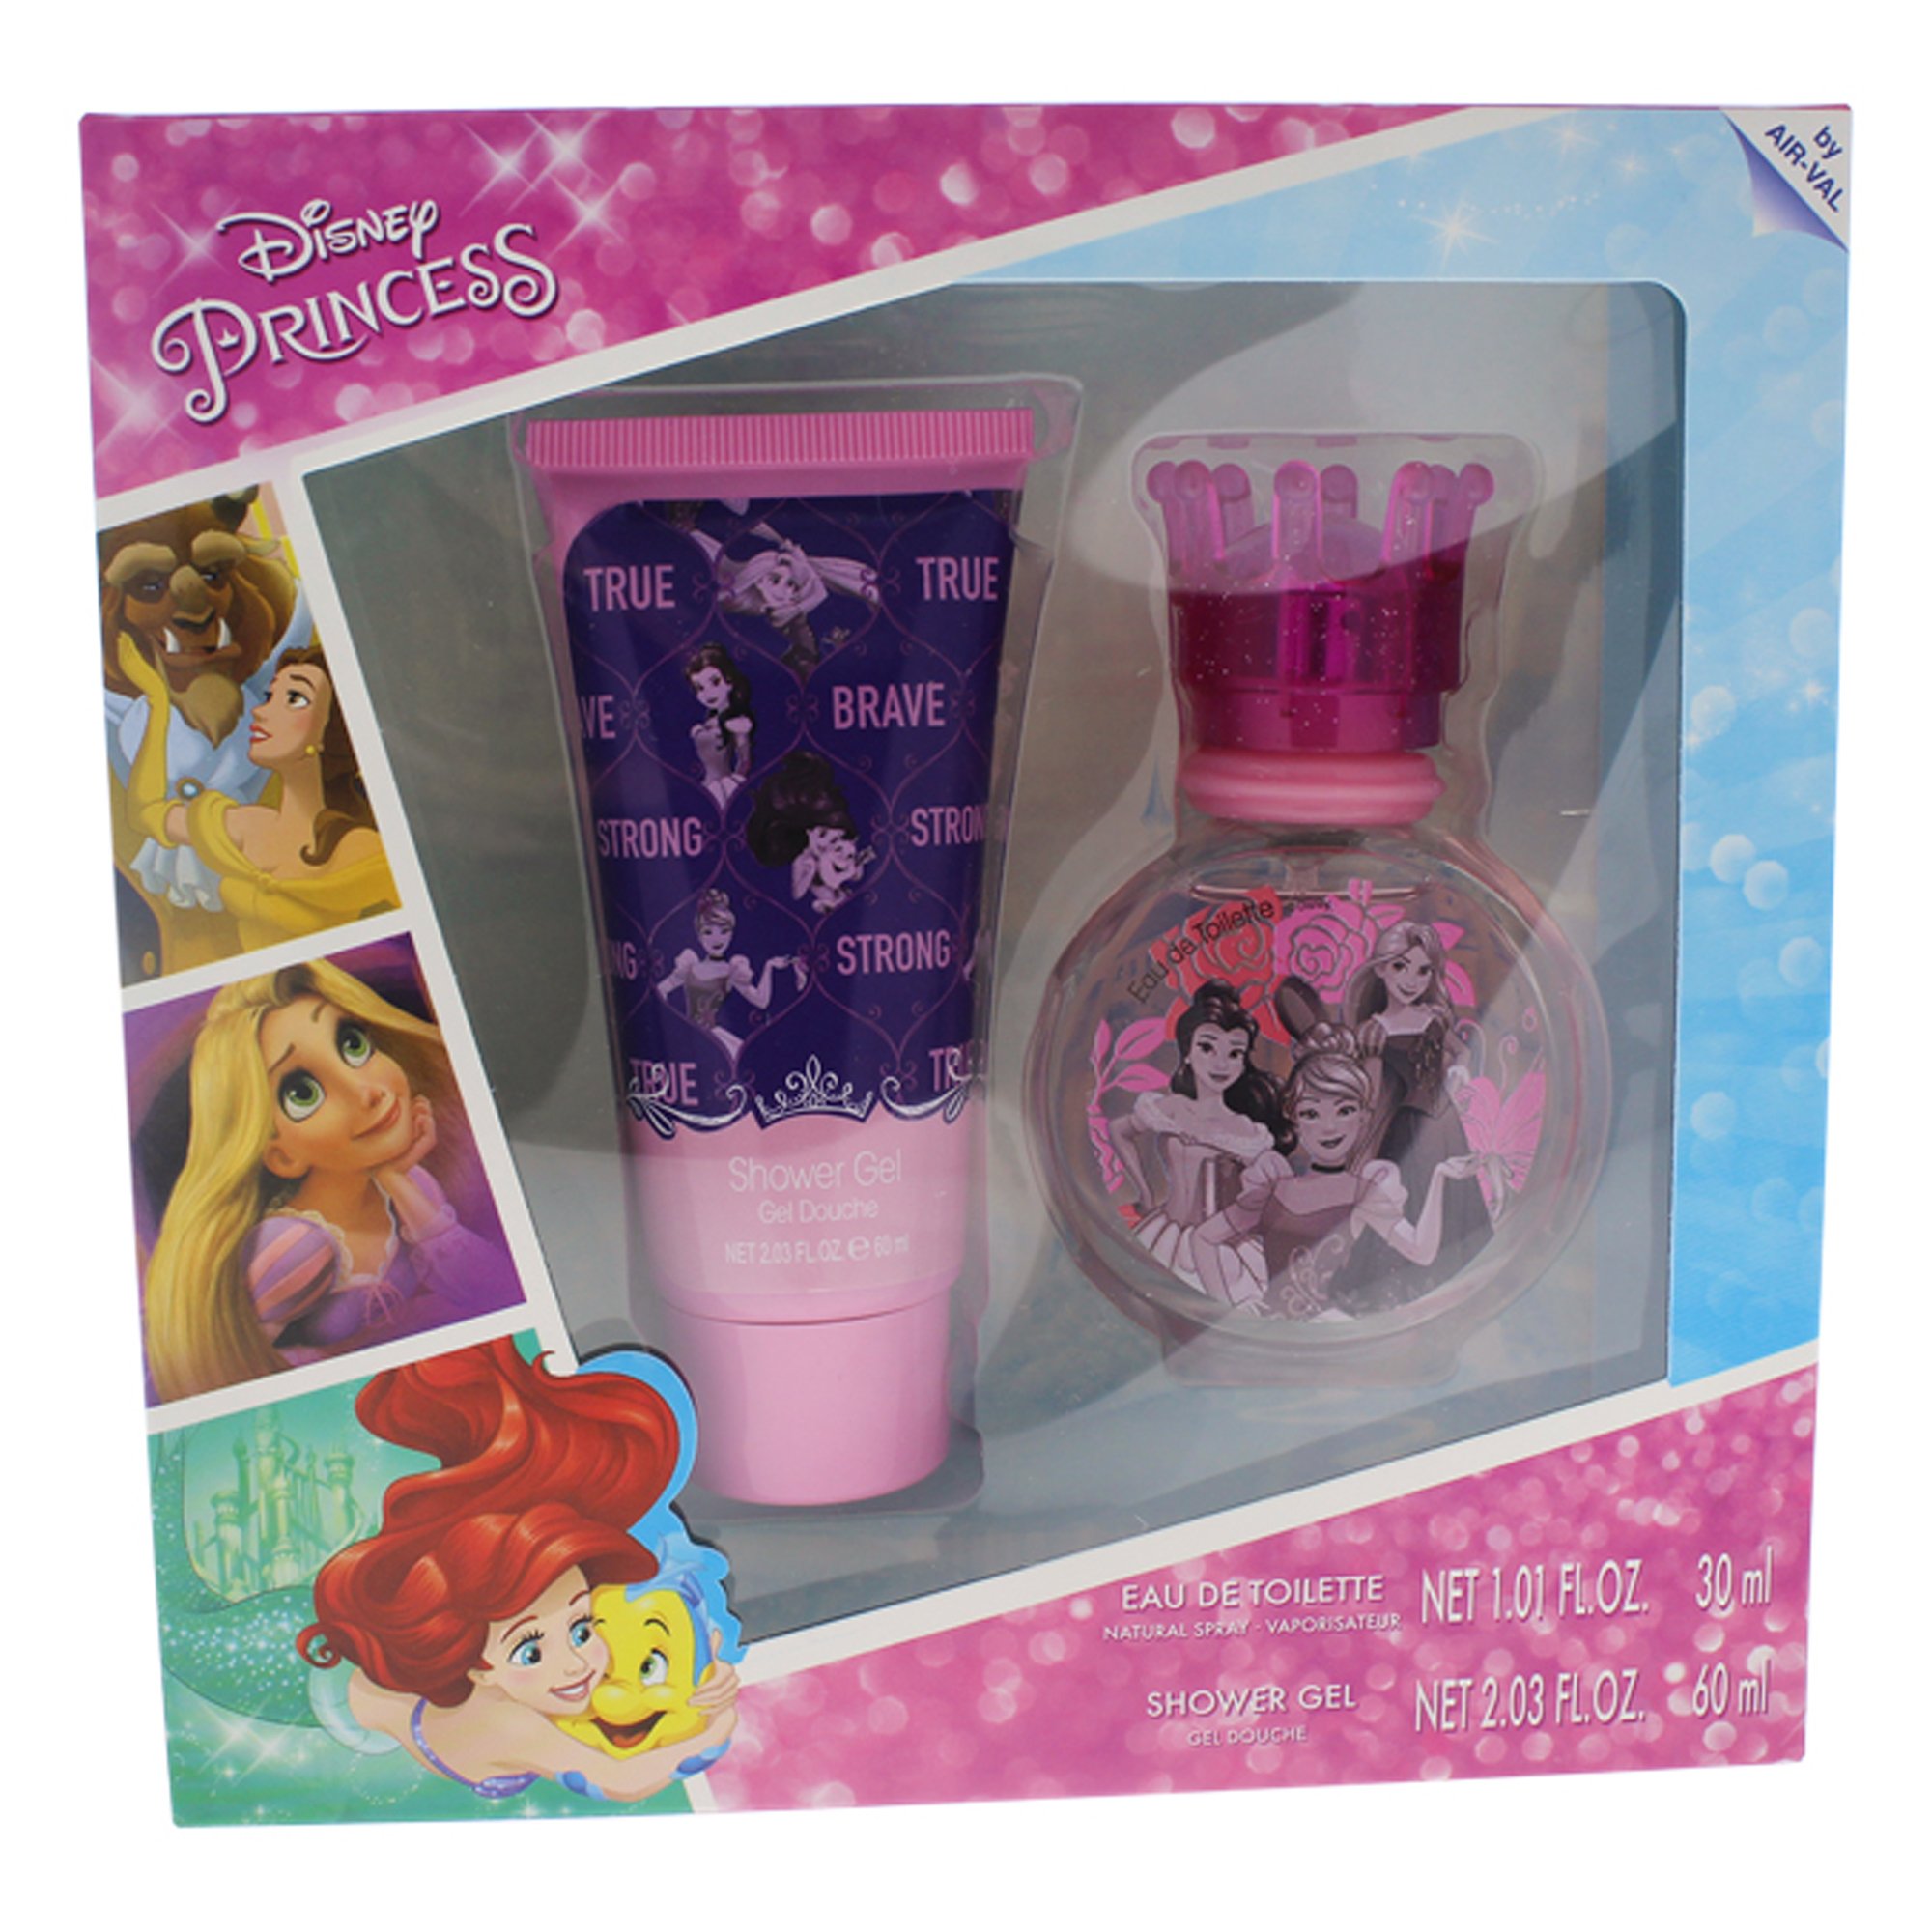 Disney Princess for Kids 2 Piece Gift Set with Eau de Toilette Spray & Shower Gel, 2 Count